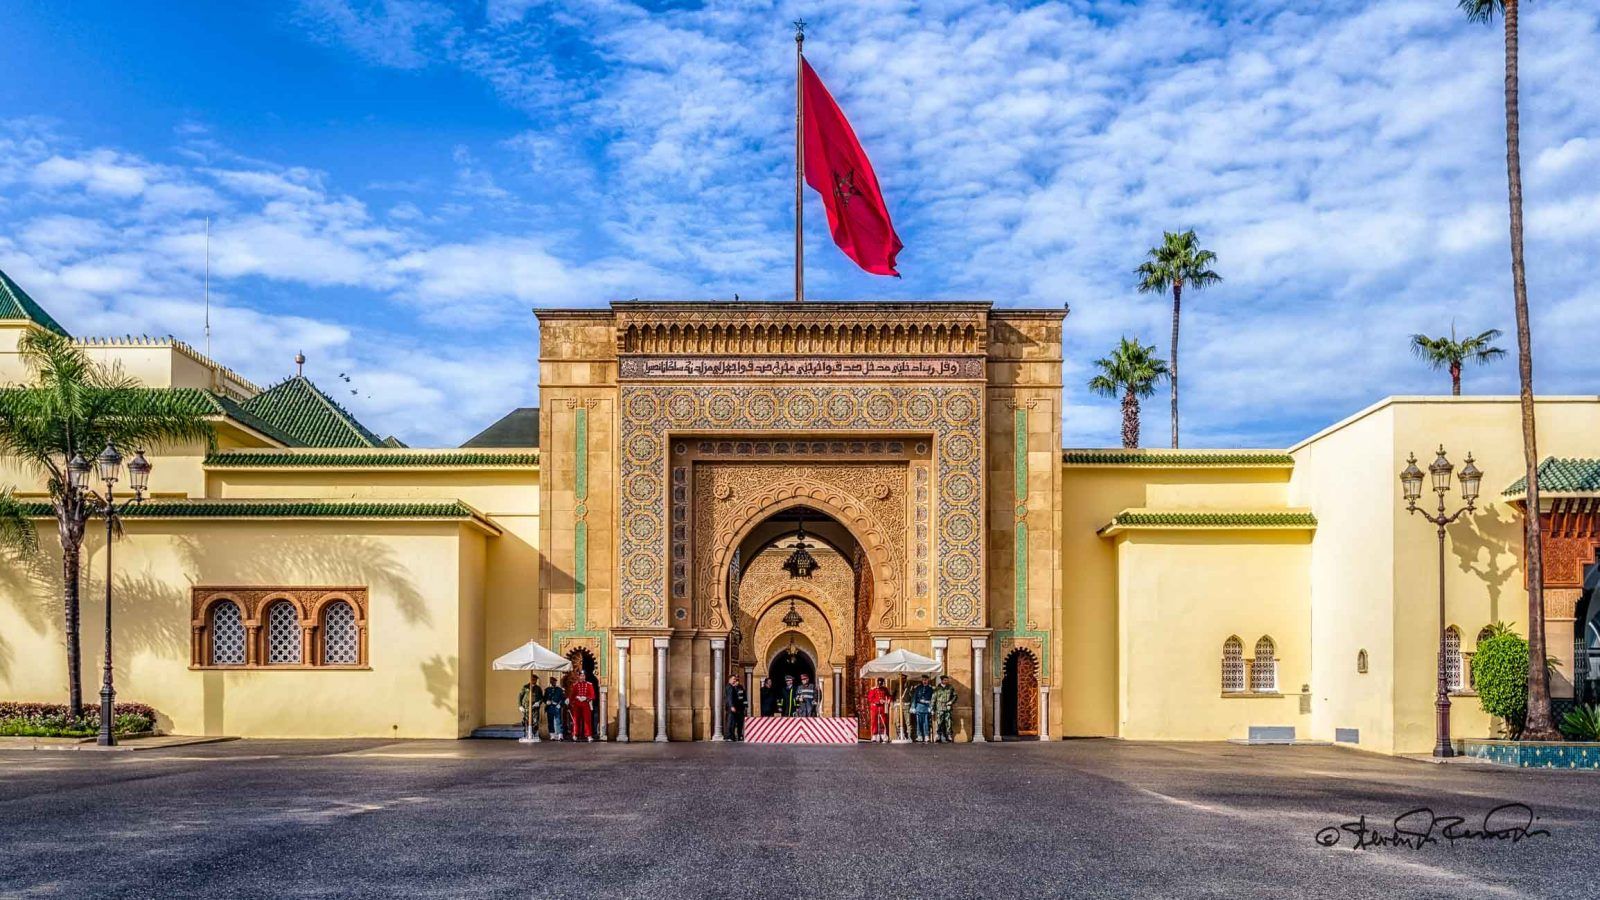 The royal palace of Rabat